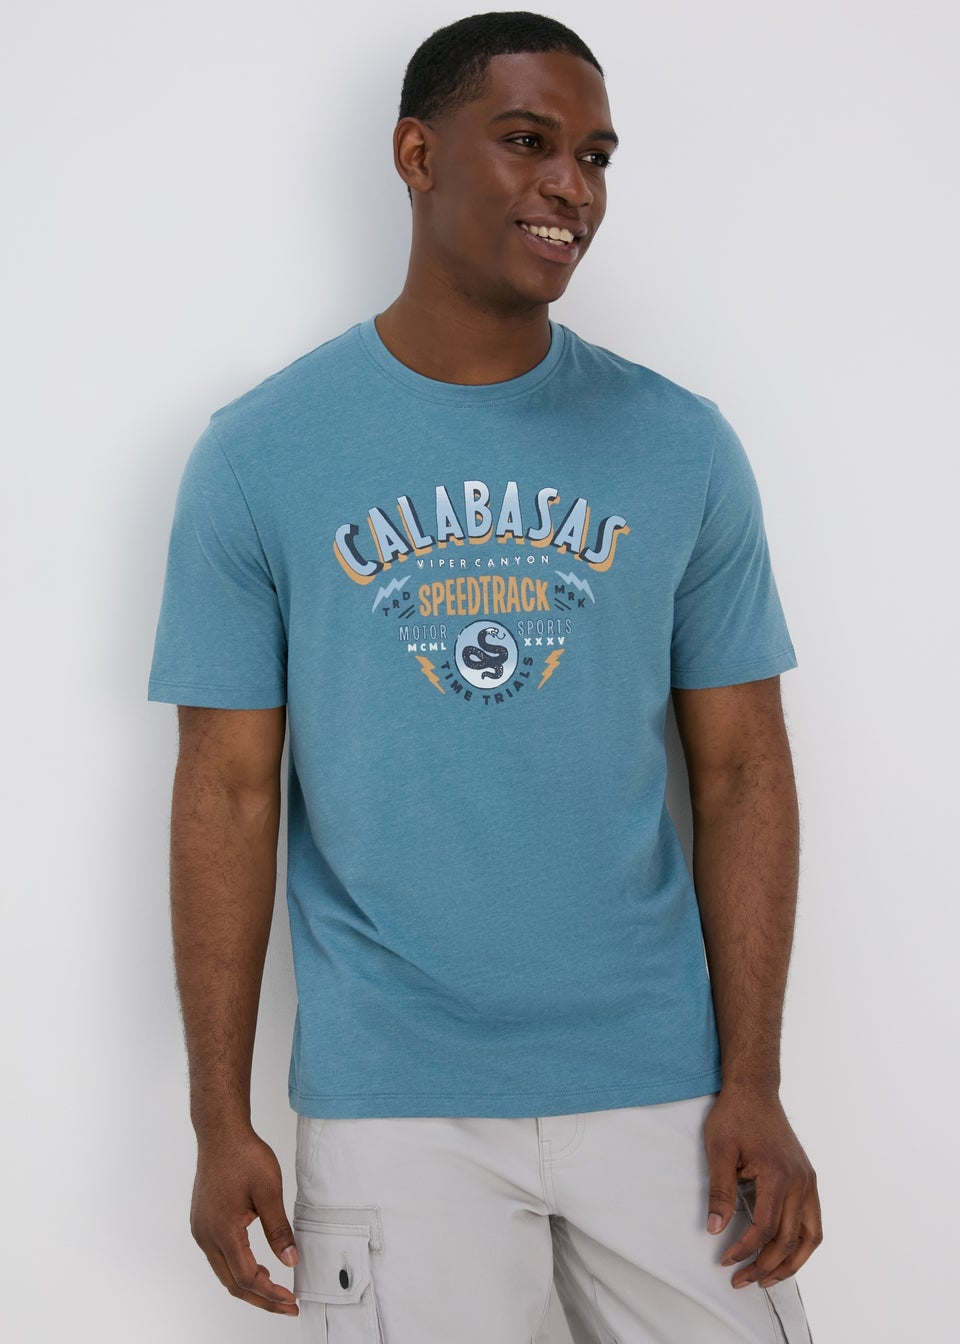 Teal Calabasas T-Shirt